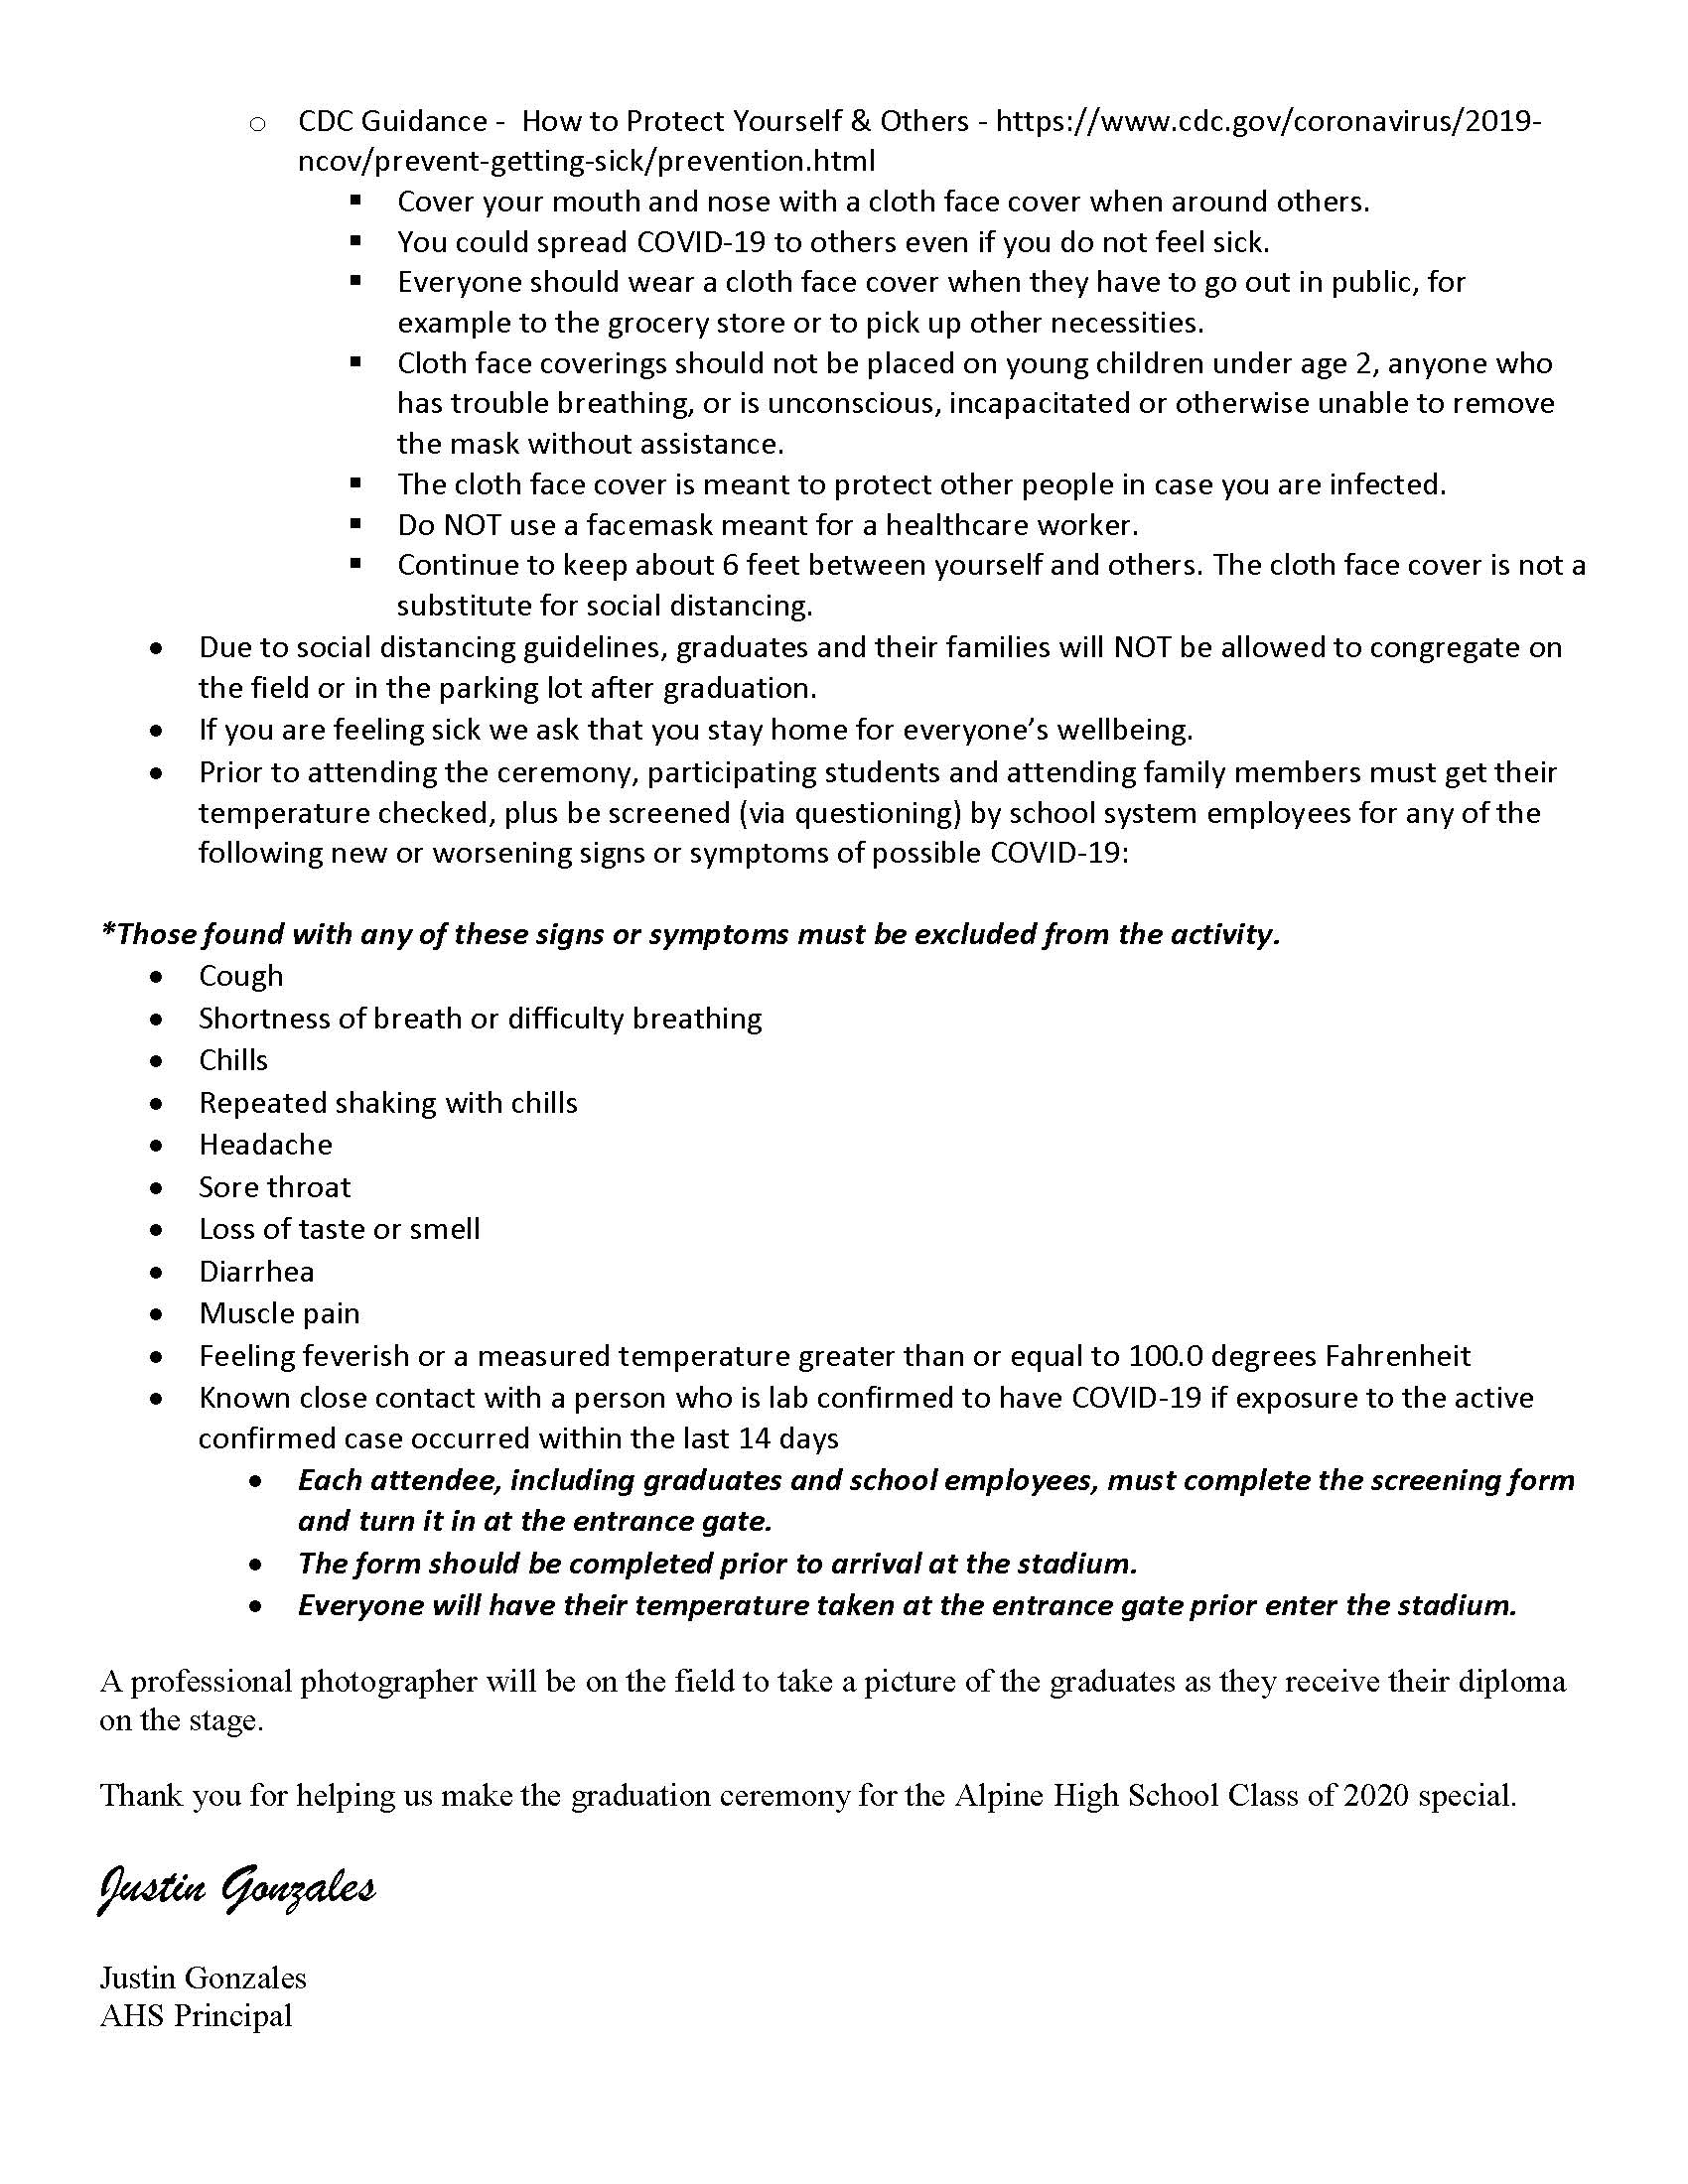 AHS 2020 Graduation Letter_Page_2